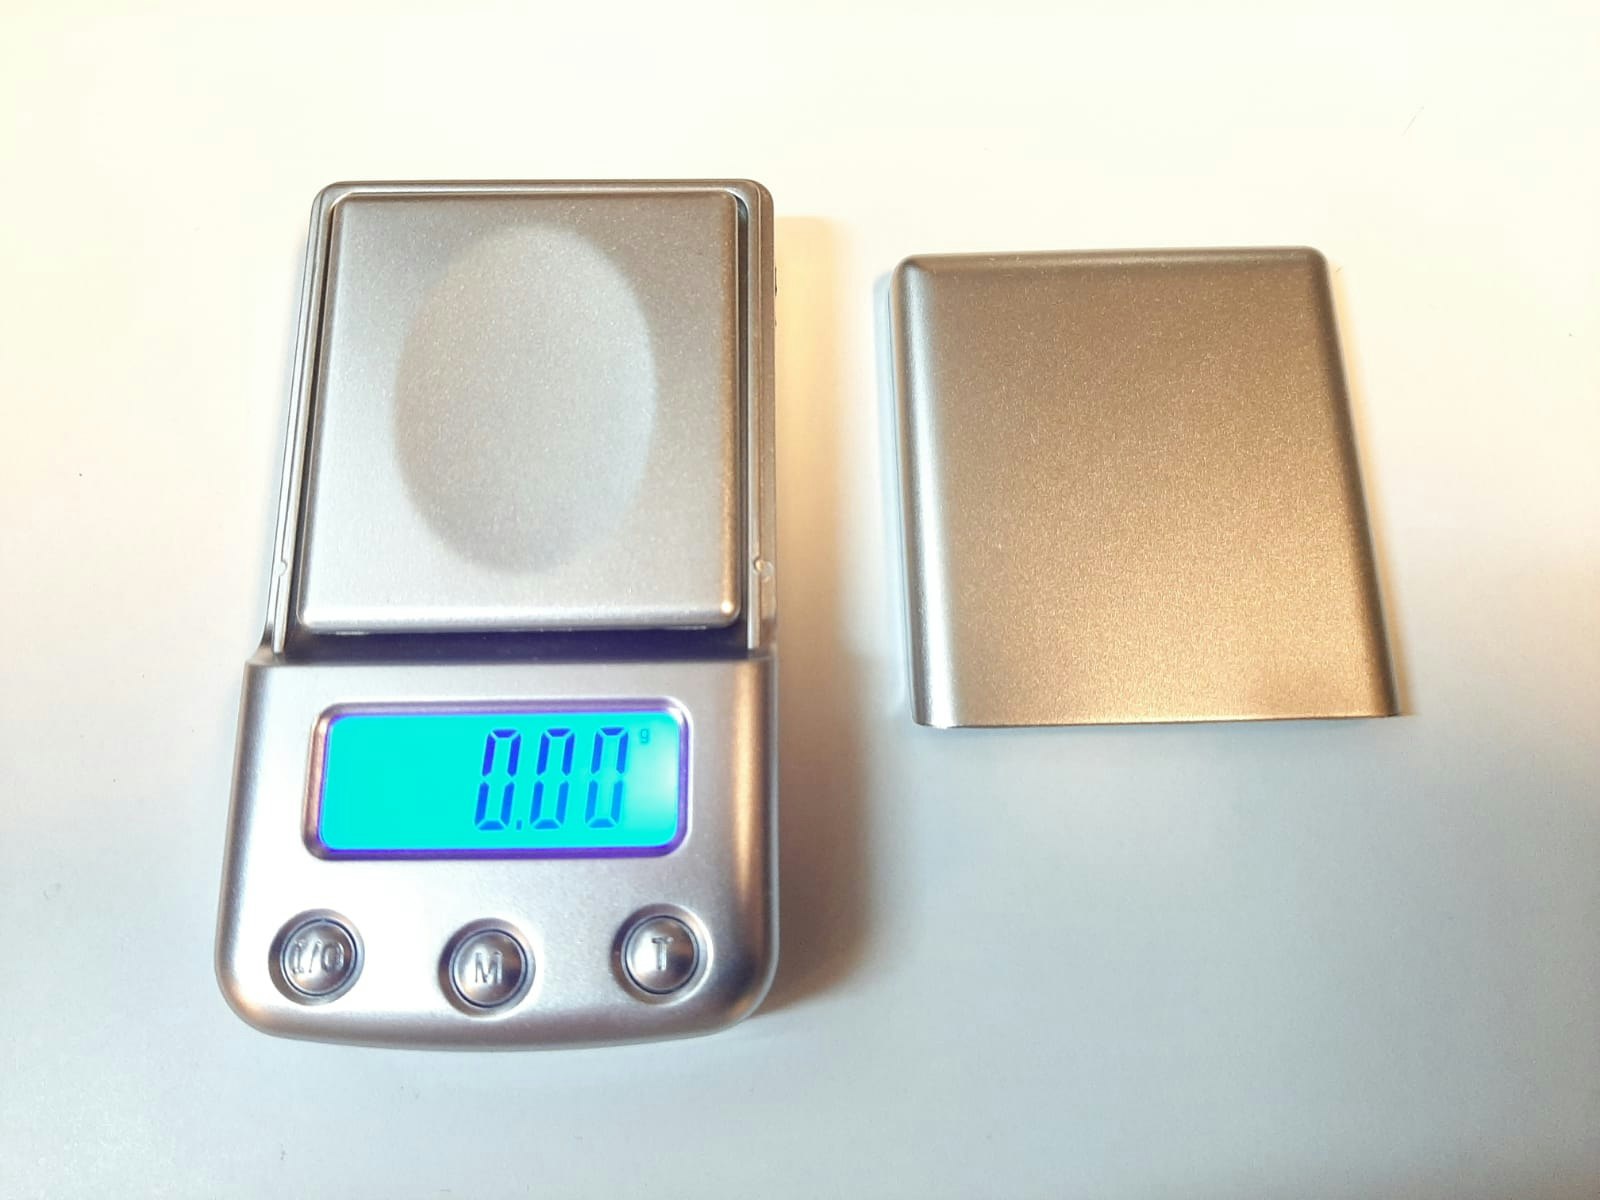 Digitalvåg (100 / 0.01 gram) + 4 vikter